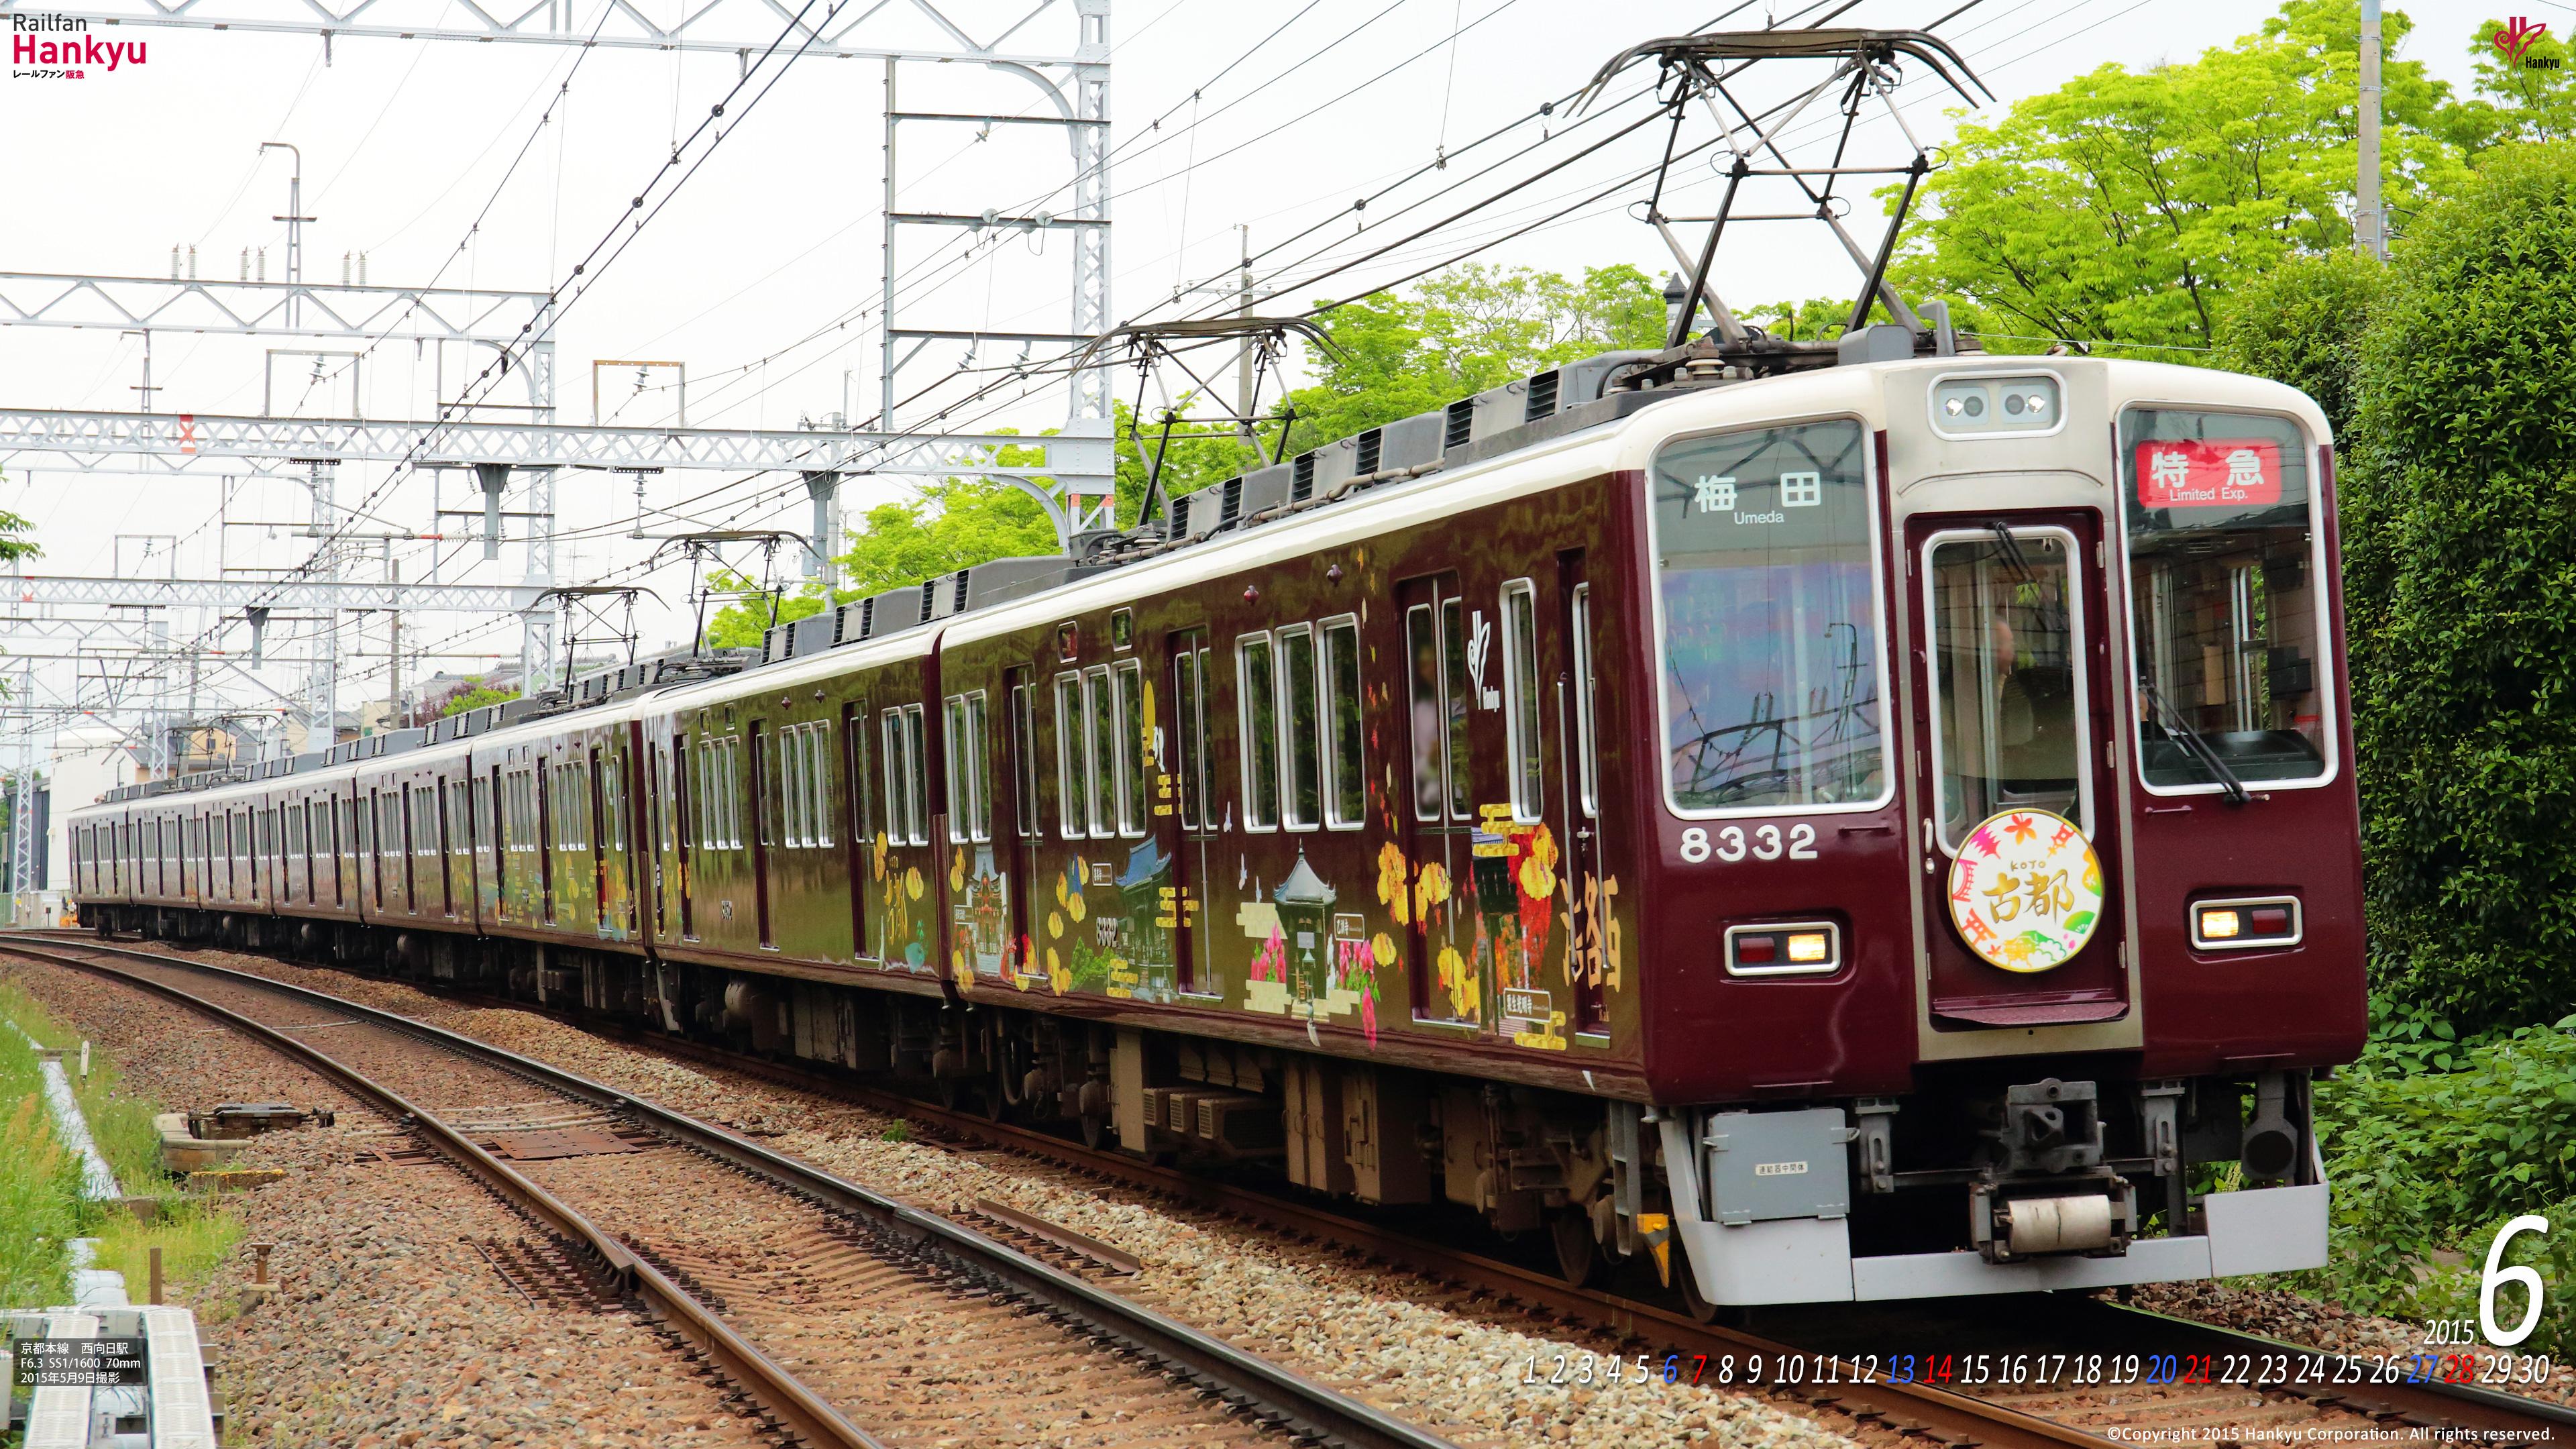 2015年06月 壁紙カレンダー レールファン阪急 阪急電車 公式鉄道